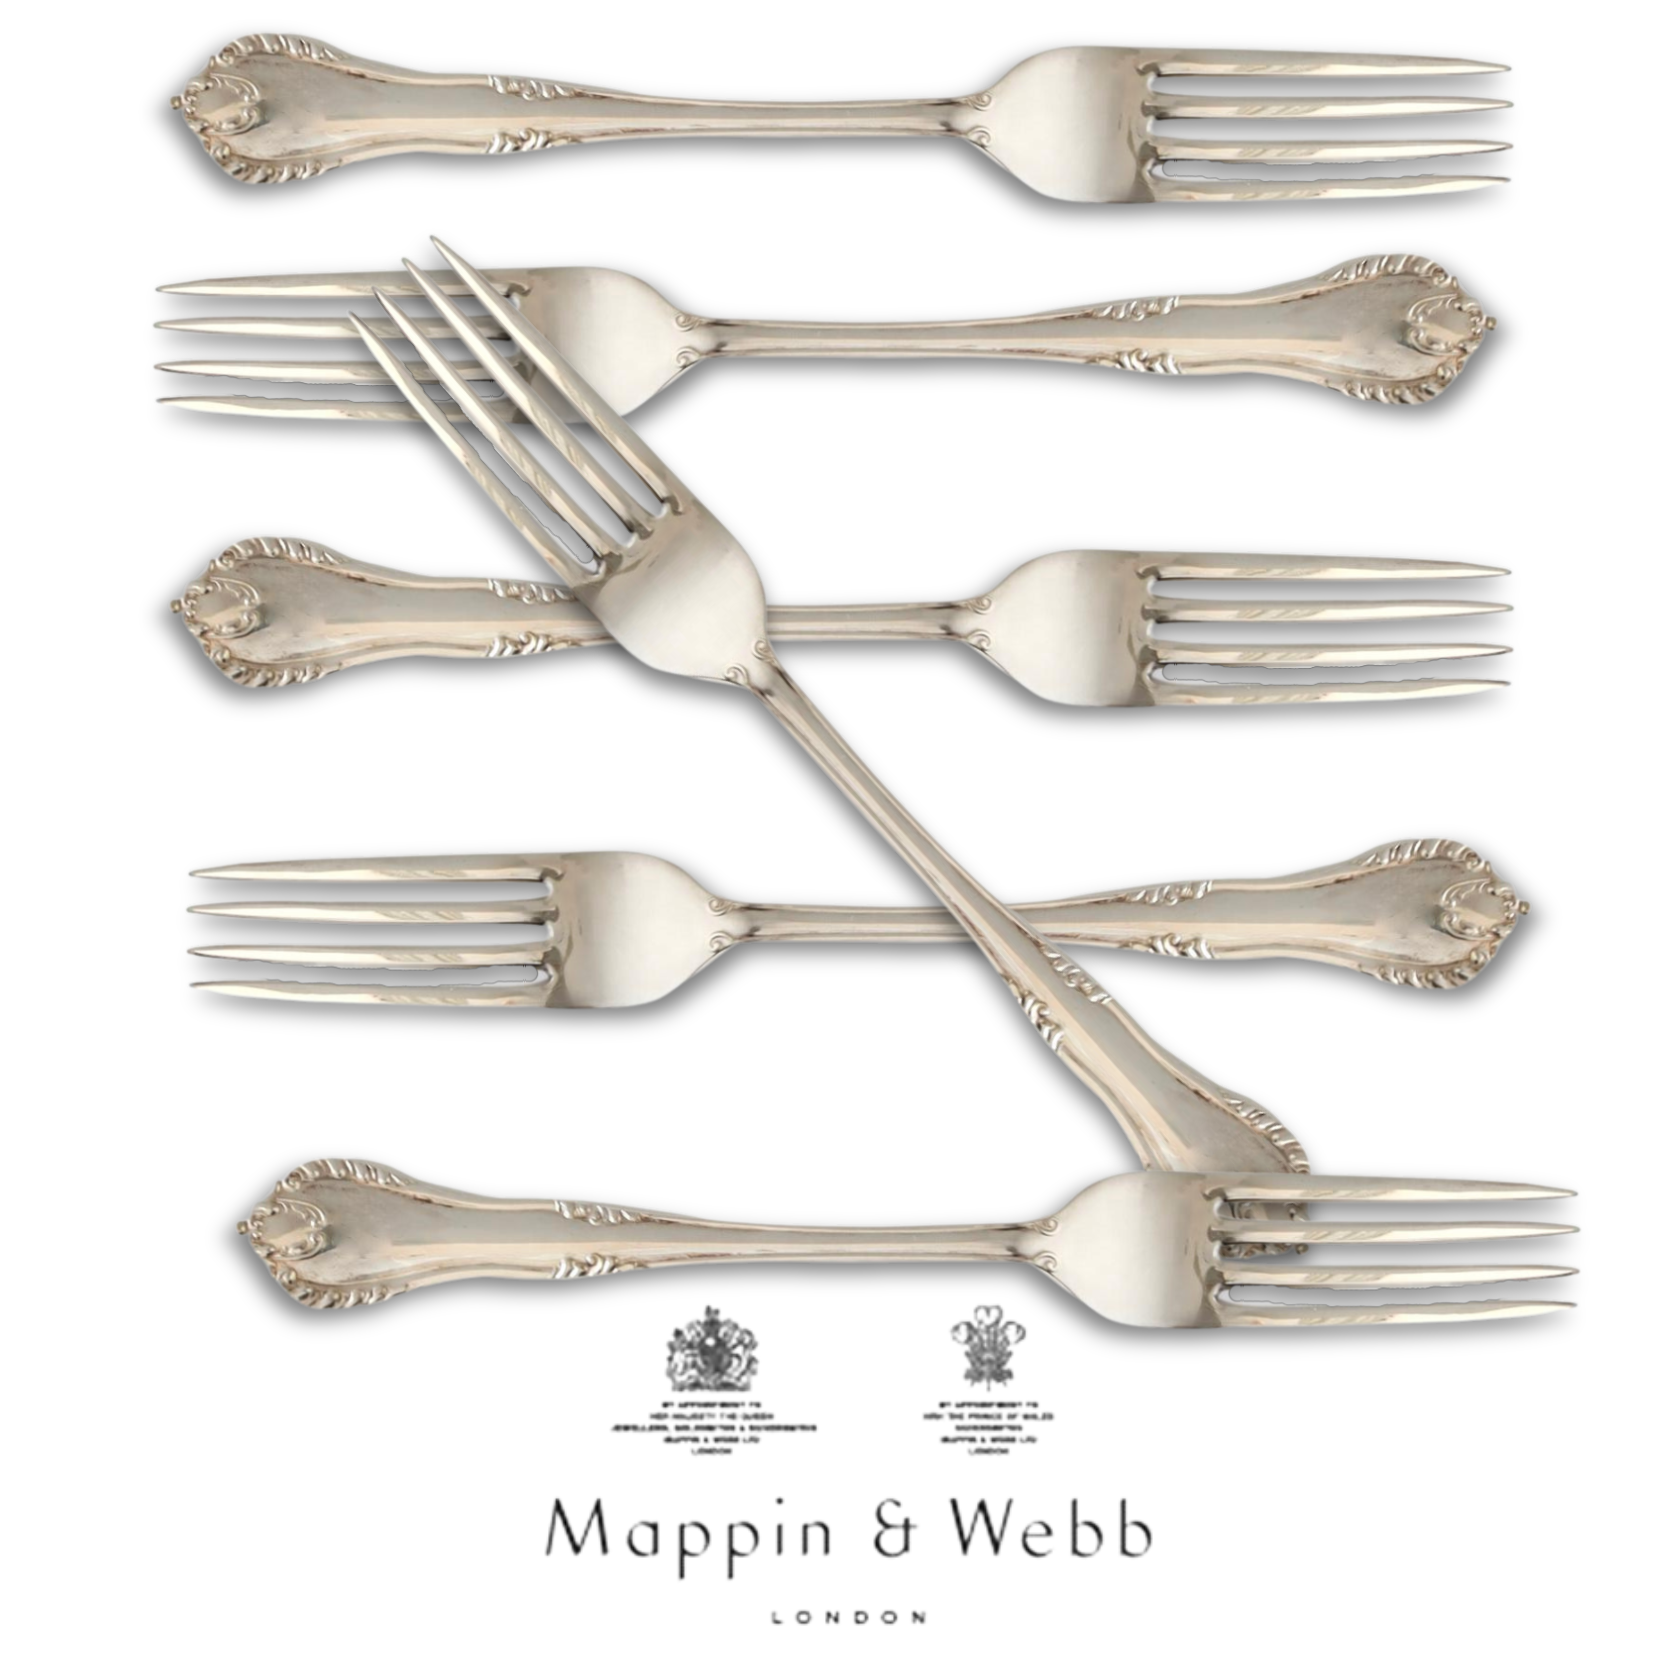 Mappin & Webb Oversized Dinner Forks S/6~P77674704